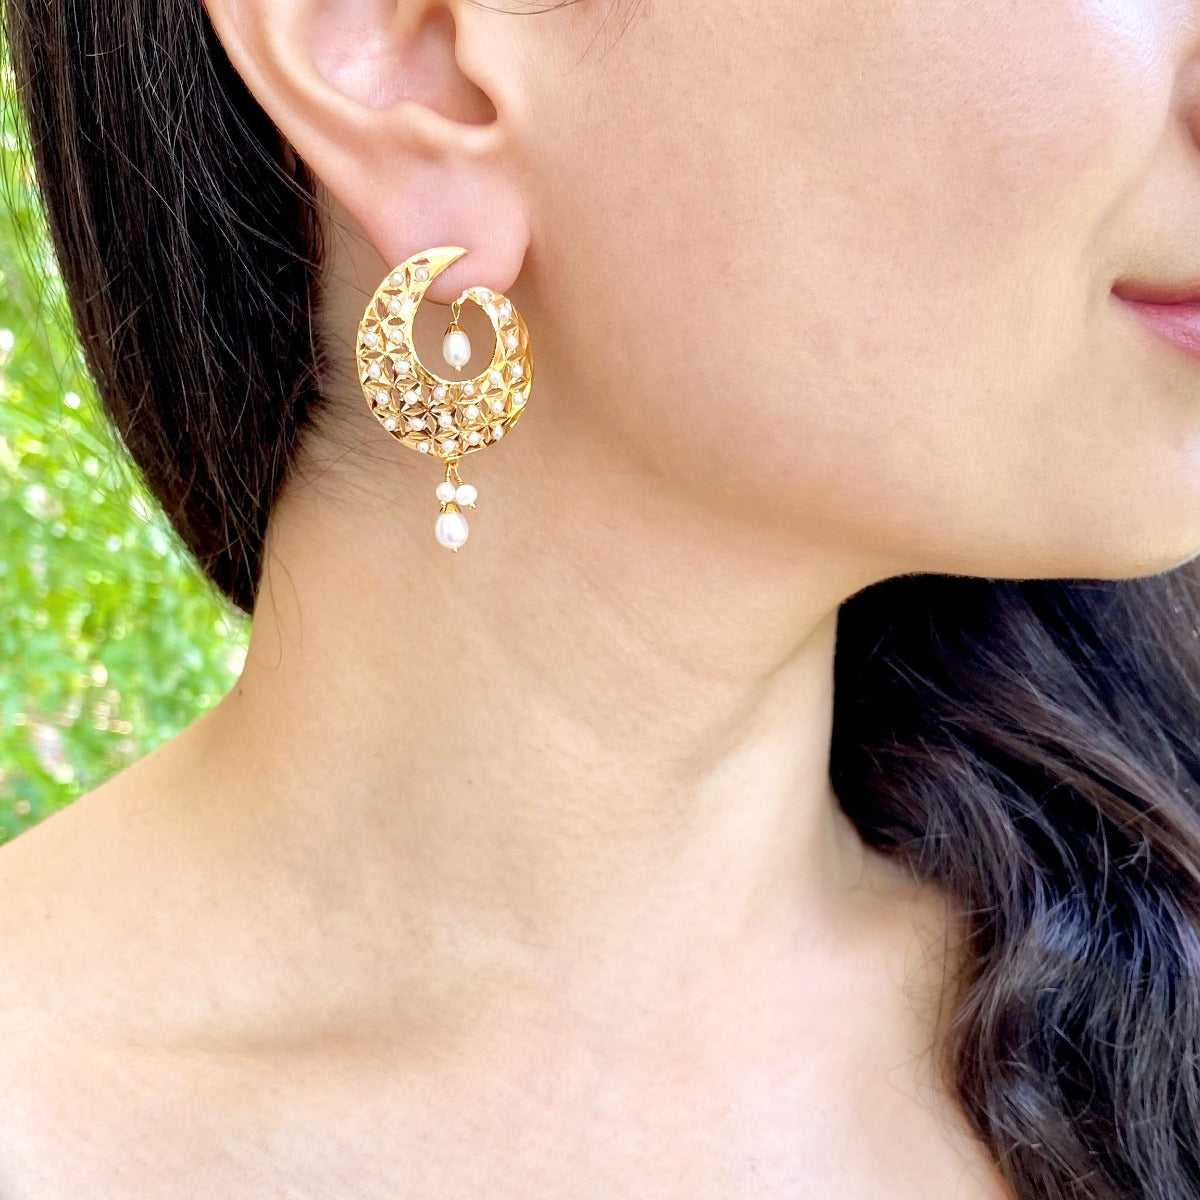 jadau earrings studded with pearls